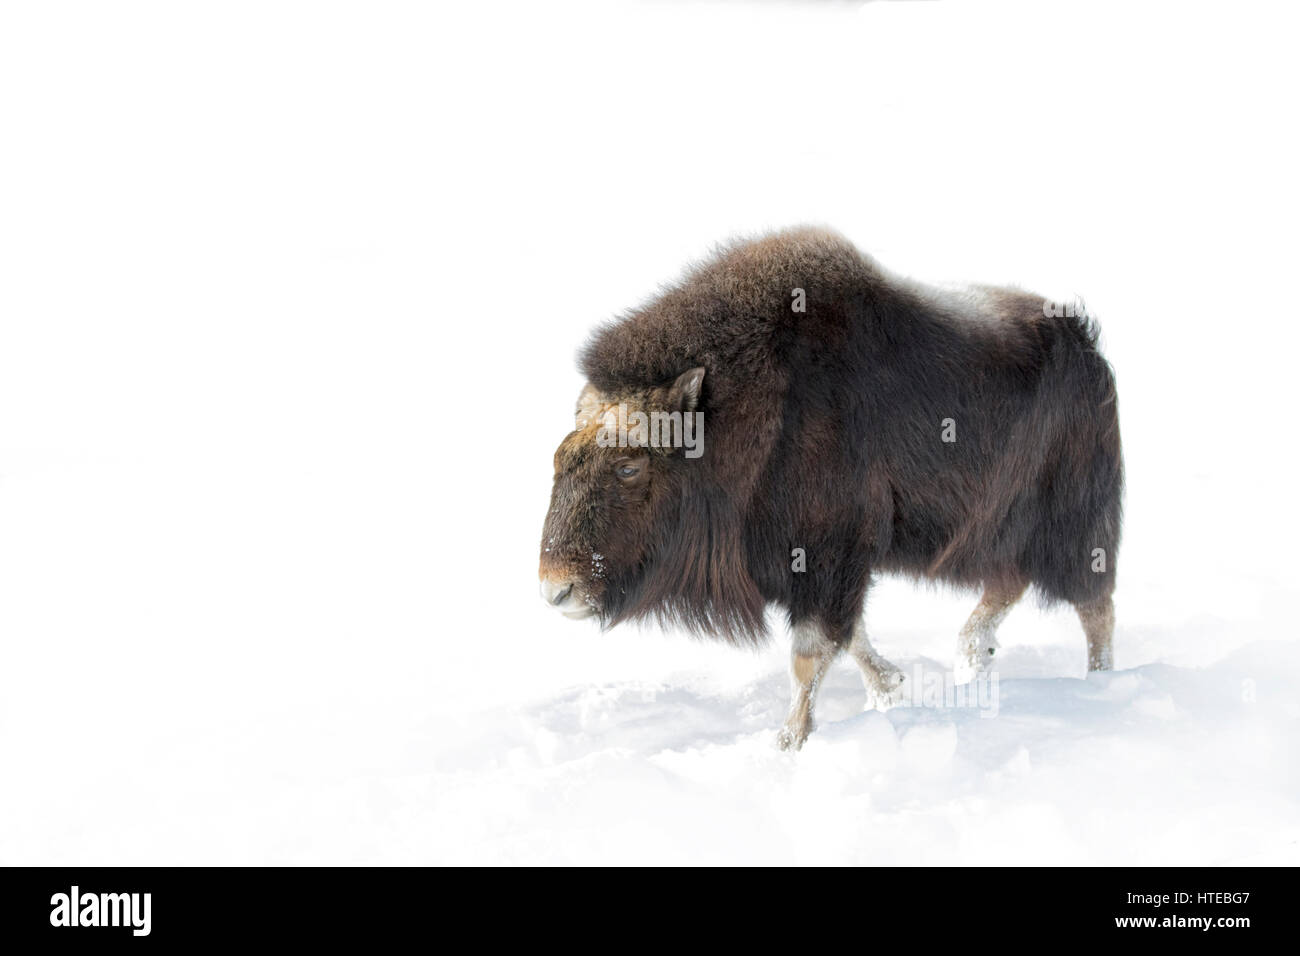 Le boeuf musqué marcher dans la neige de l'hiver au Canada Banque D'Images